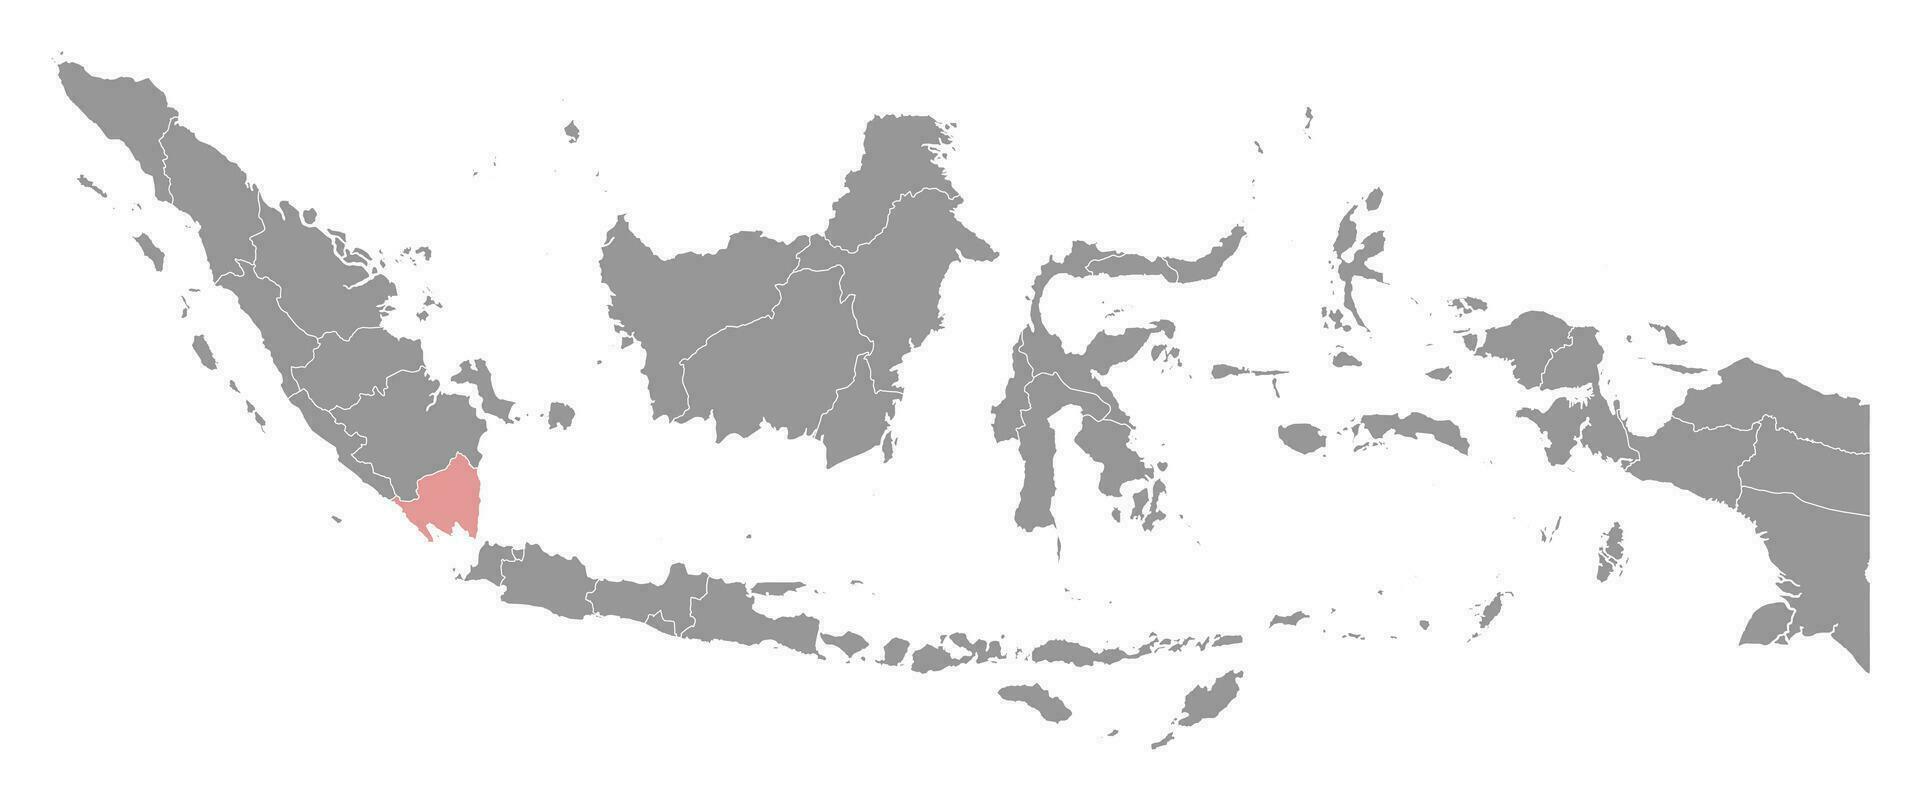 lampung província mapa, administrativo divisão do Indonésia. vetor ilustração.